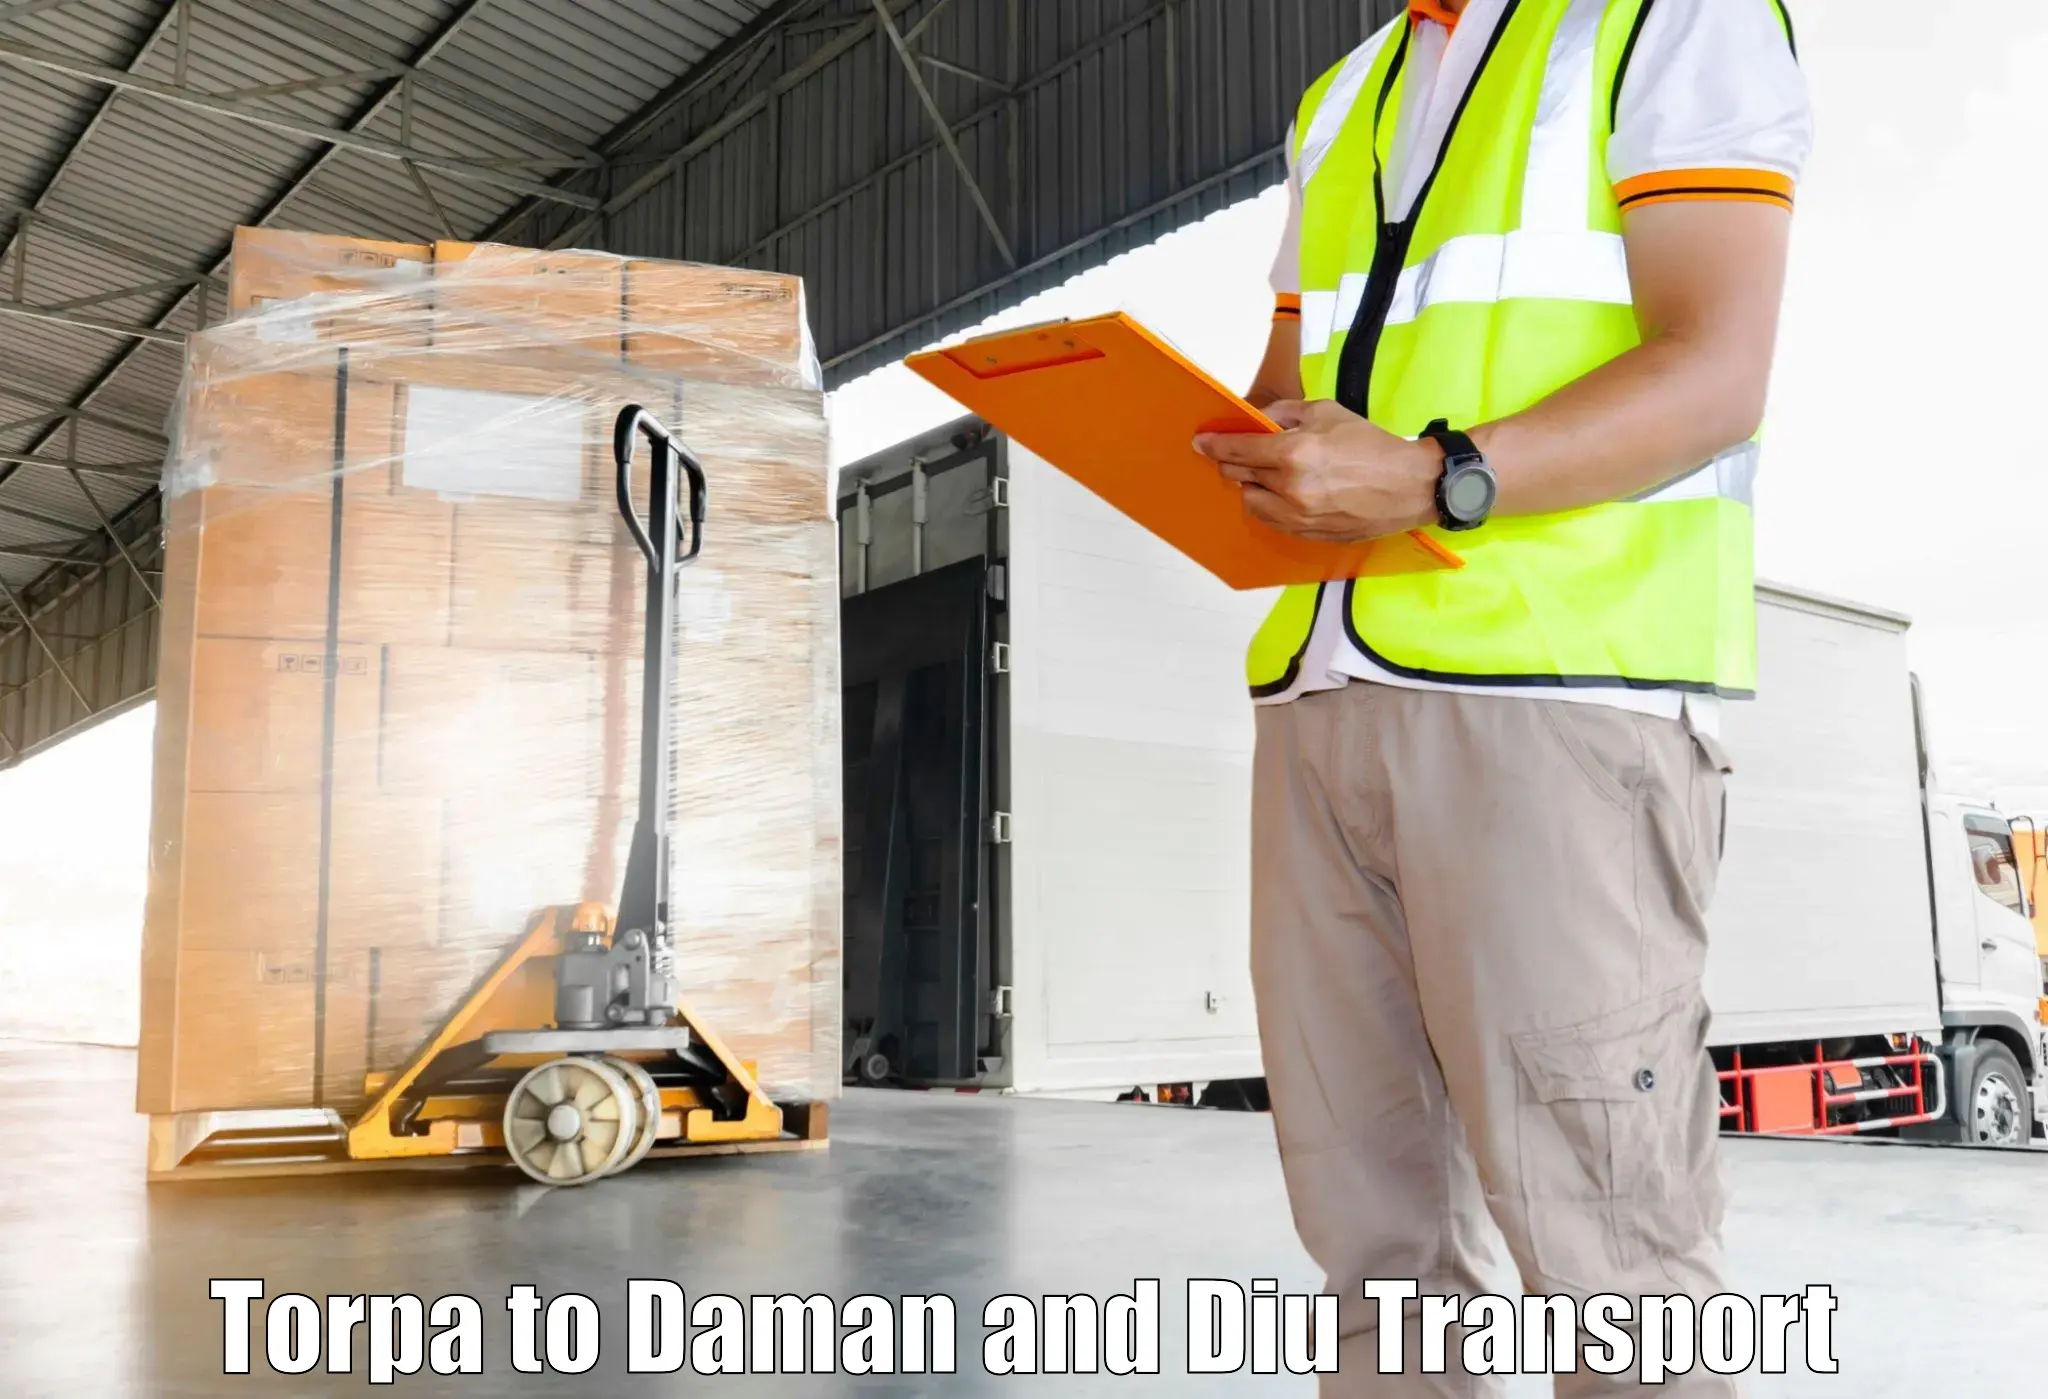 Furniture transport service Torpa to Daman